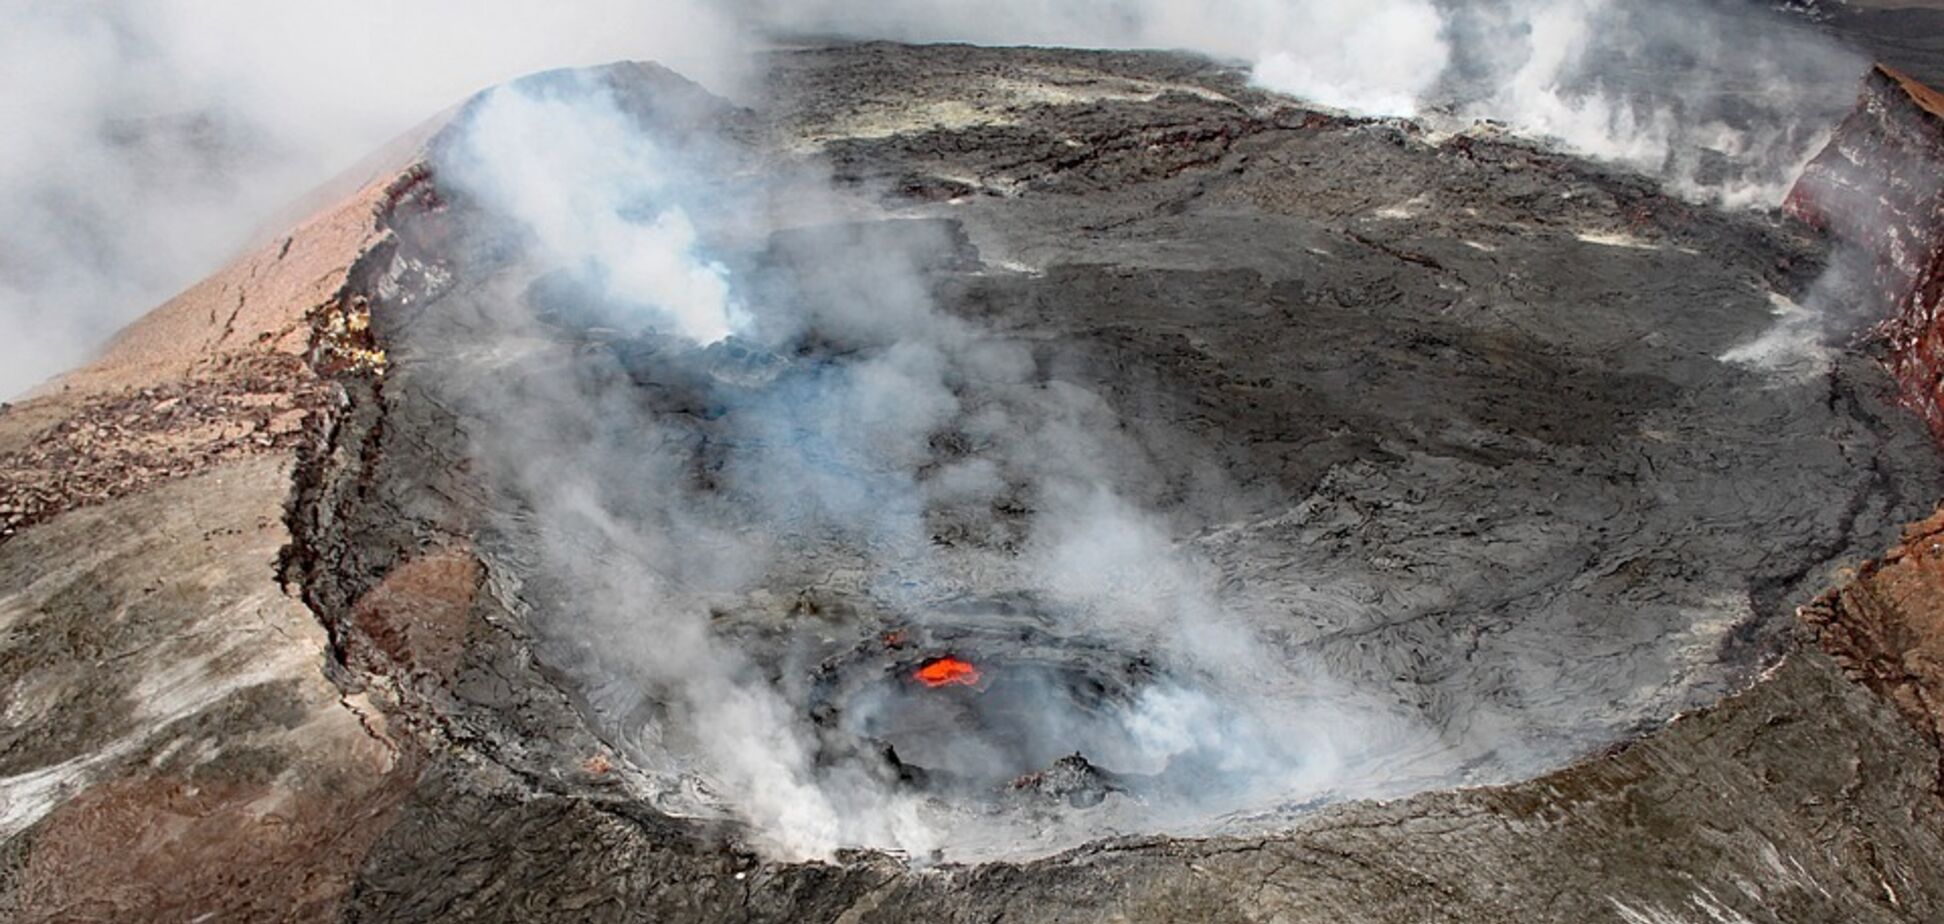 Летів 20 метрів: на Гаваях турист потрапив у жахливу НП із вулканом